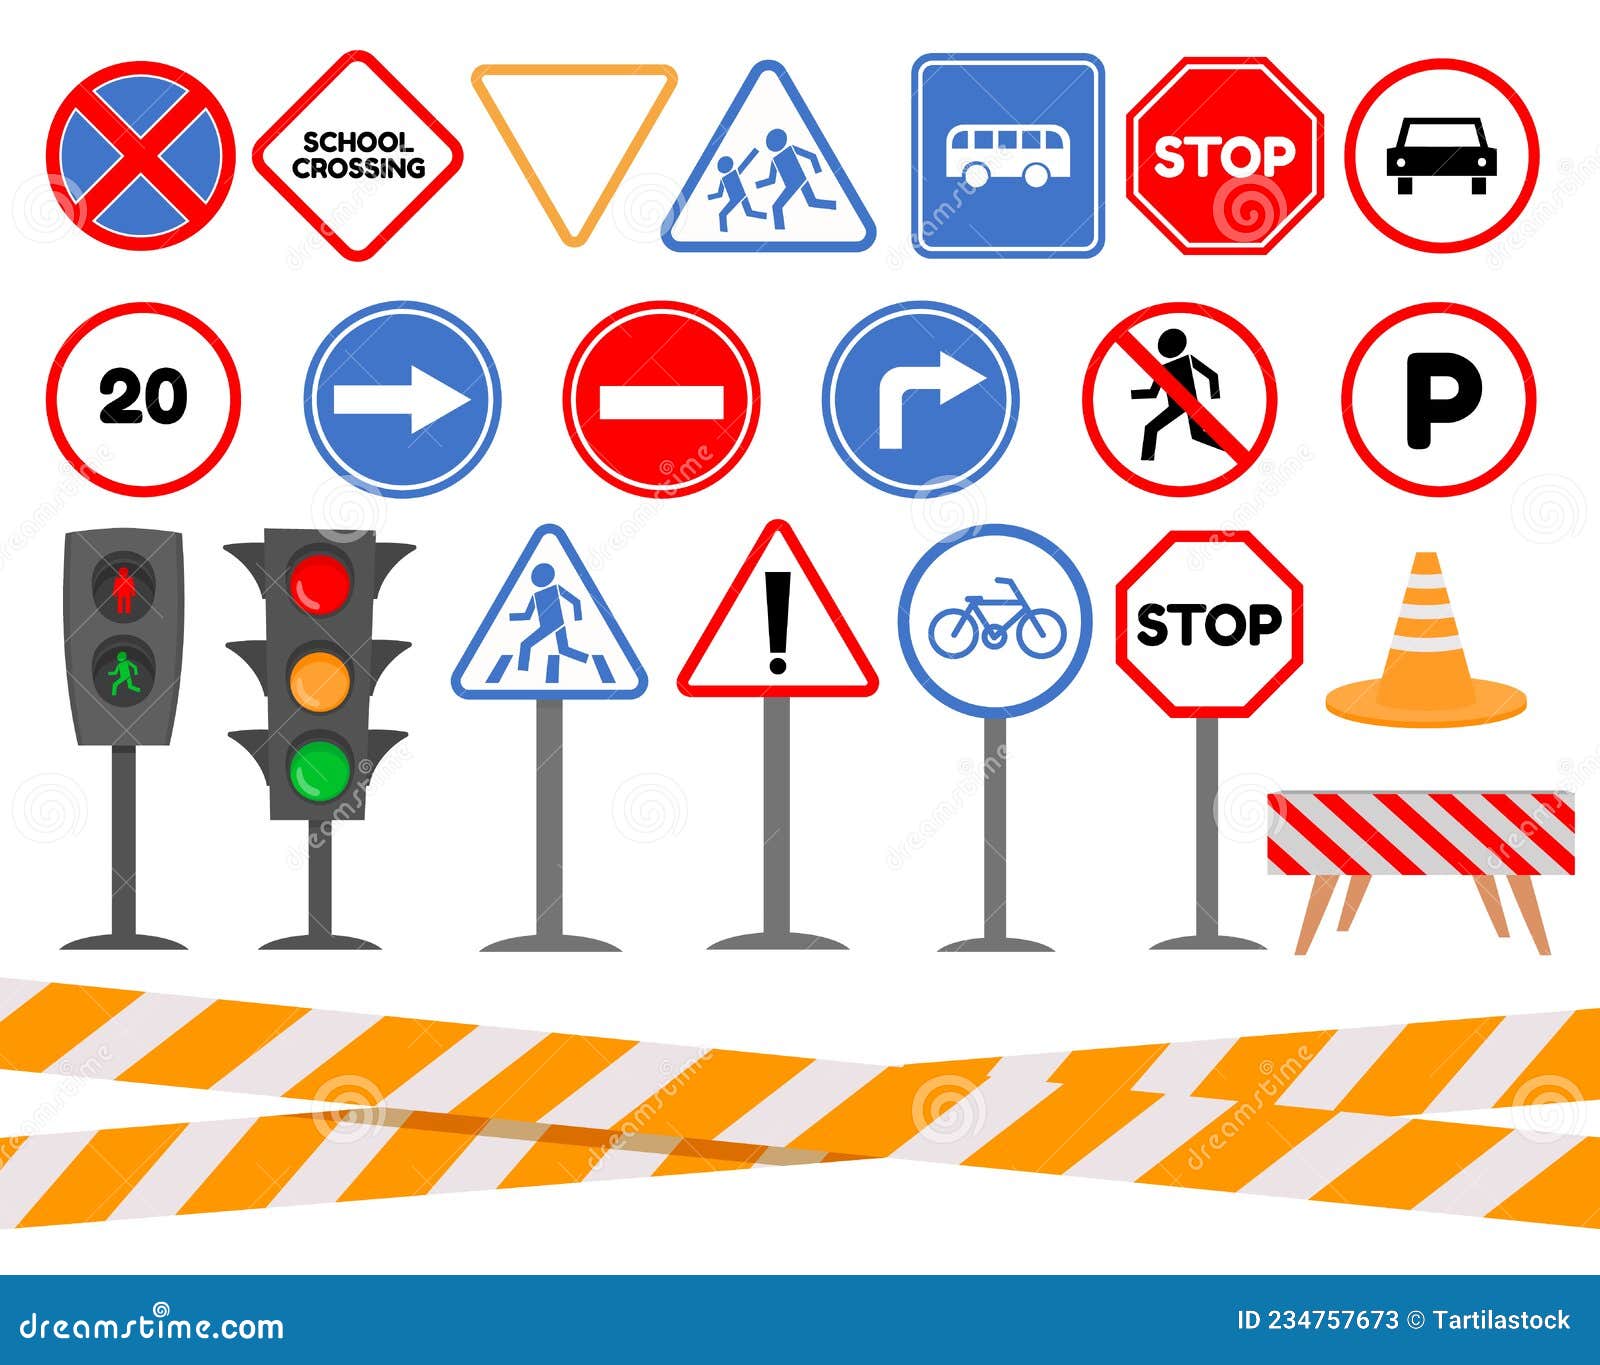 Semaforo Delle Vignette E Segnaletica Stradale Per La Sicurezza Dei Bambini.  Segnali Di Avvertimento E Di Avvertimento Per Le Auto Illustrazione  Vettoriale - Illustrazione di indicatore, illustrazione: 234757673